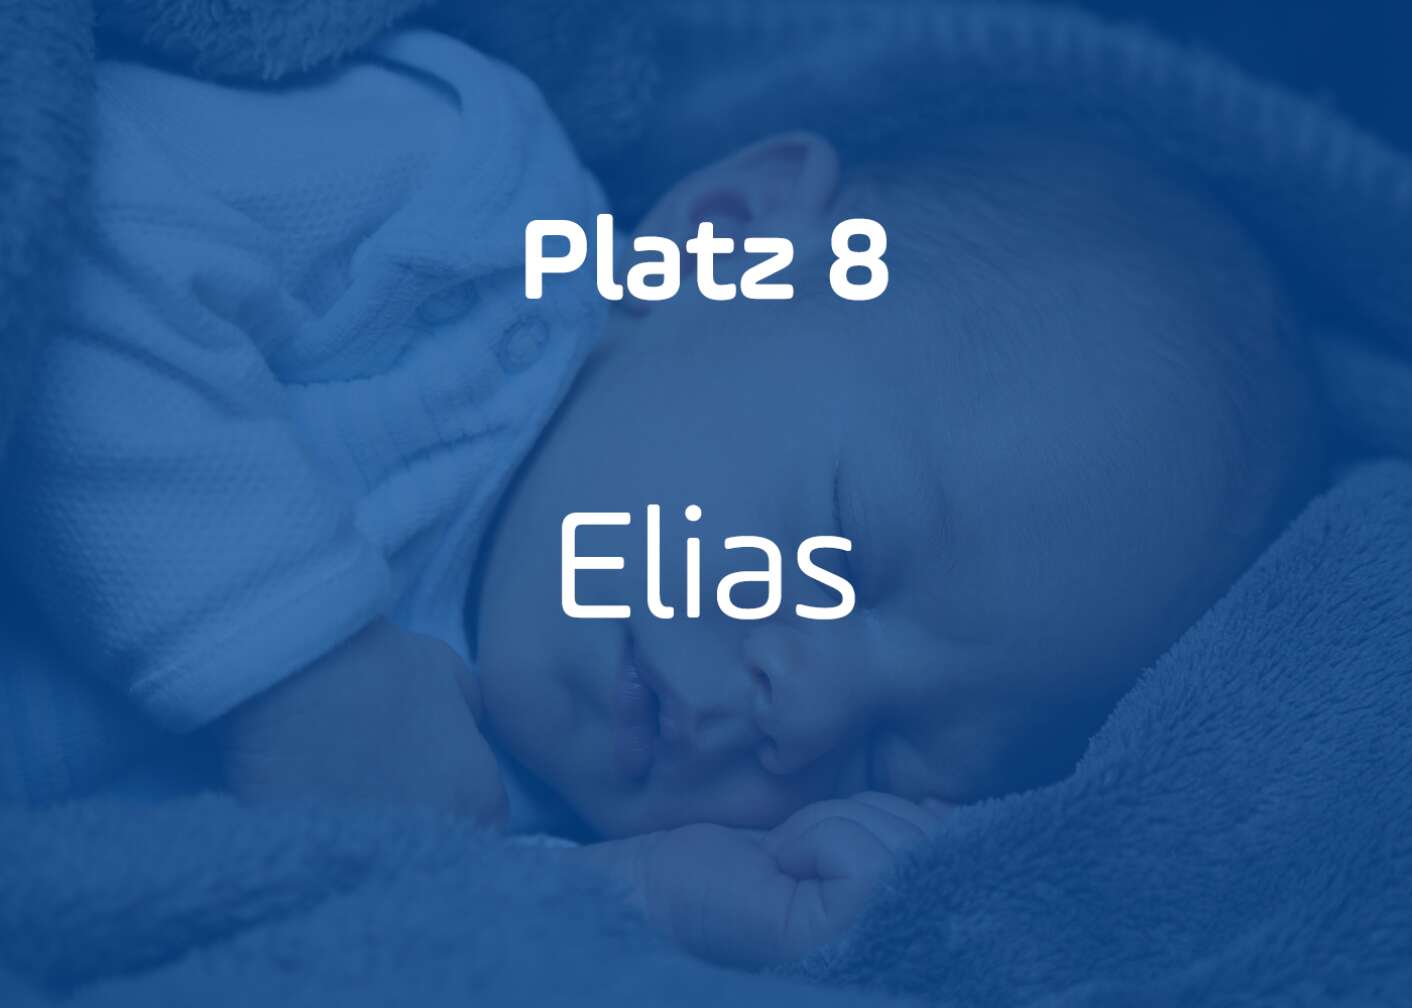 Elias Platz 8